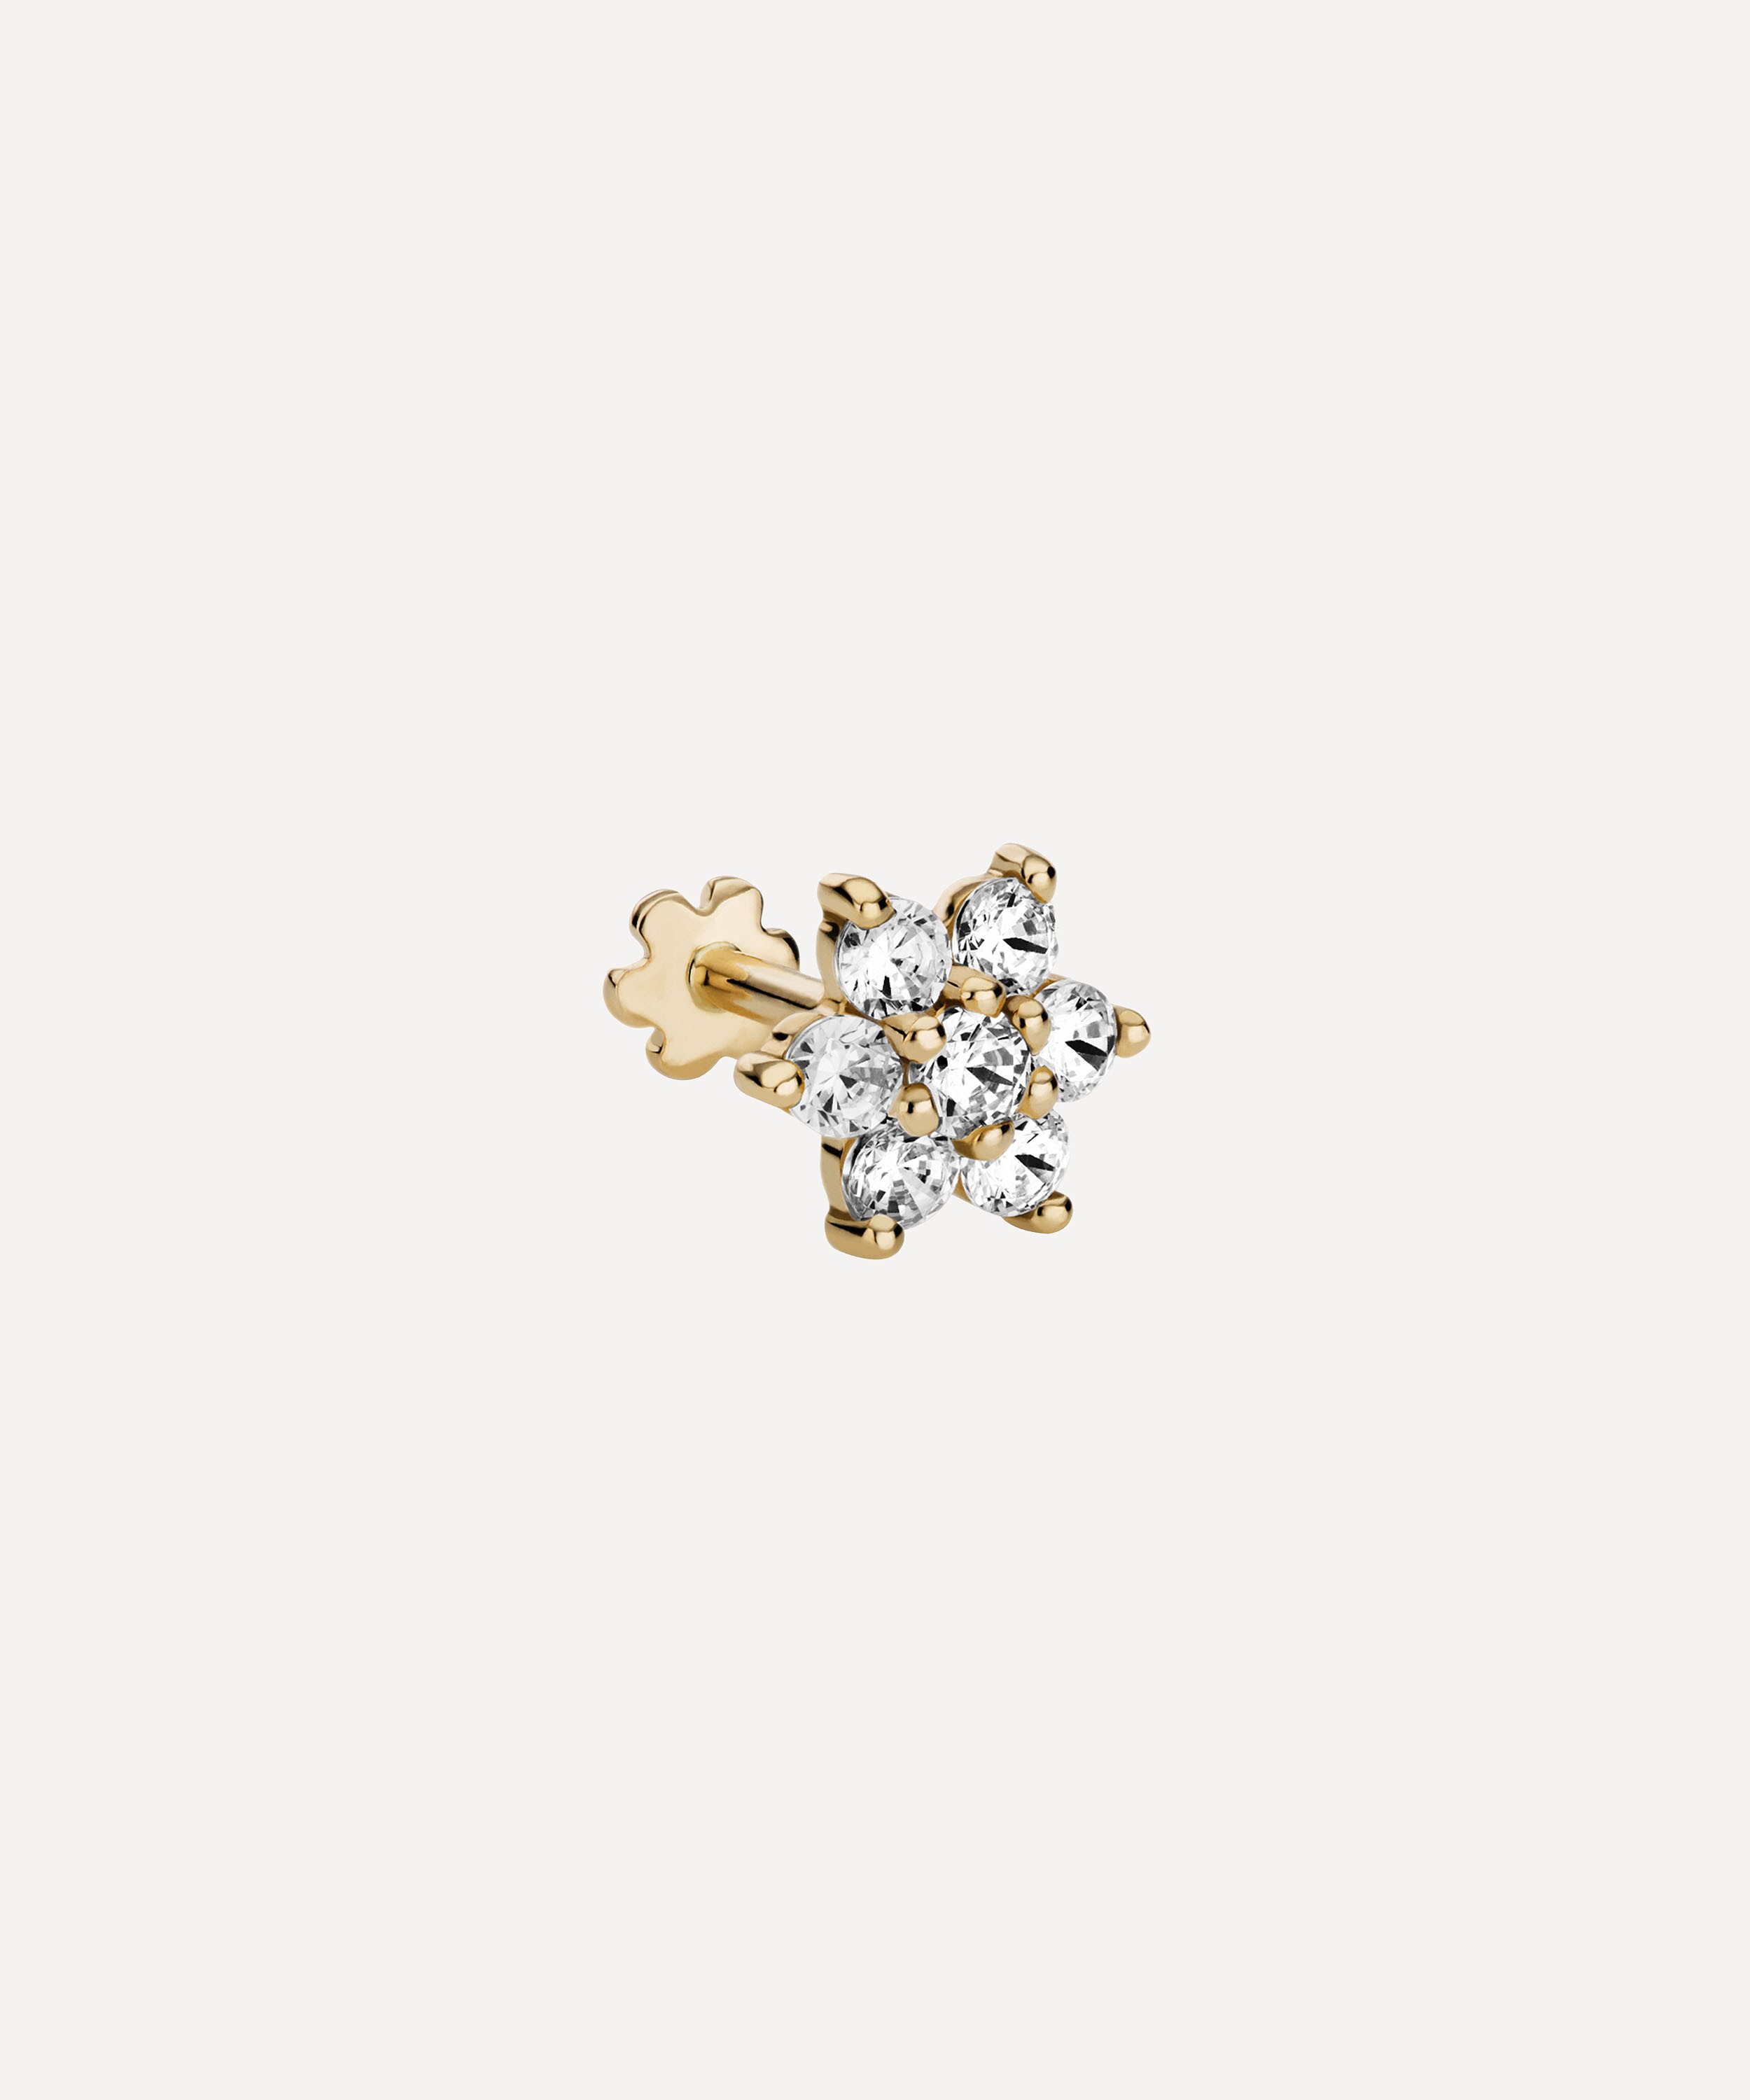 Maria Tash - 18ct 7mm Diamond Flower Threaded Stud Earring